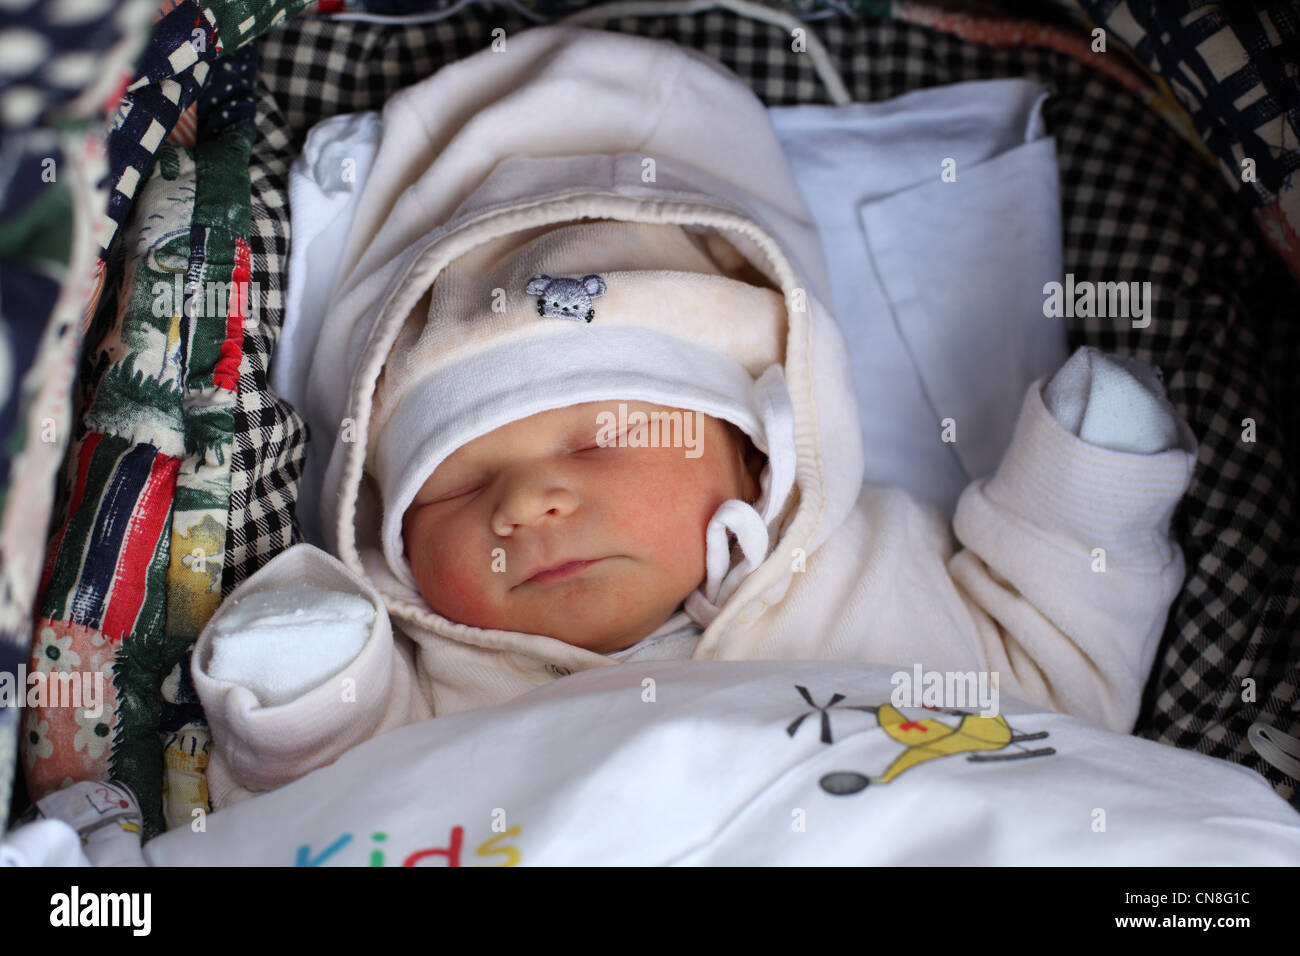 Neugeborenes Baby im Kinderwagen schlafen Stockfotografie - Alamy